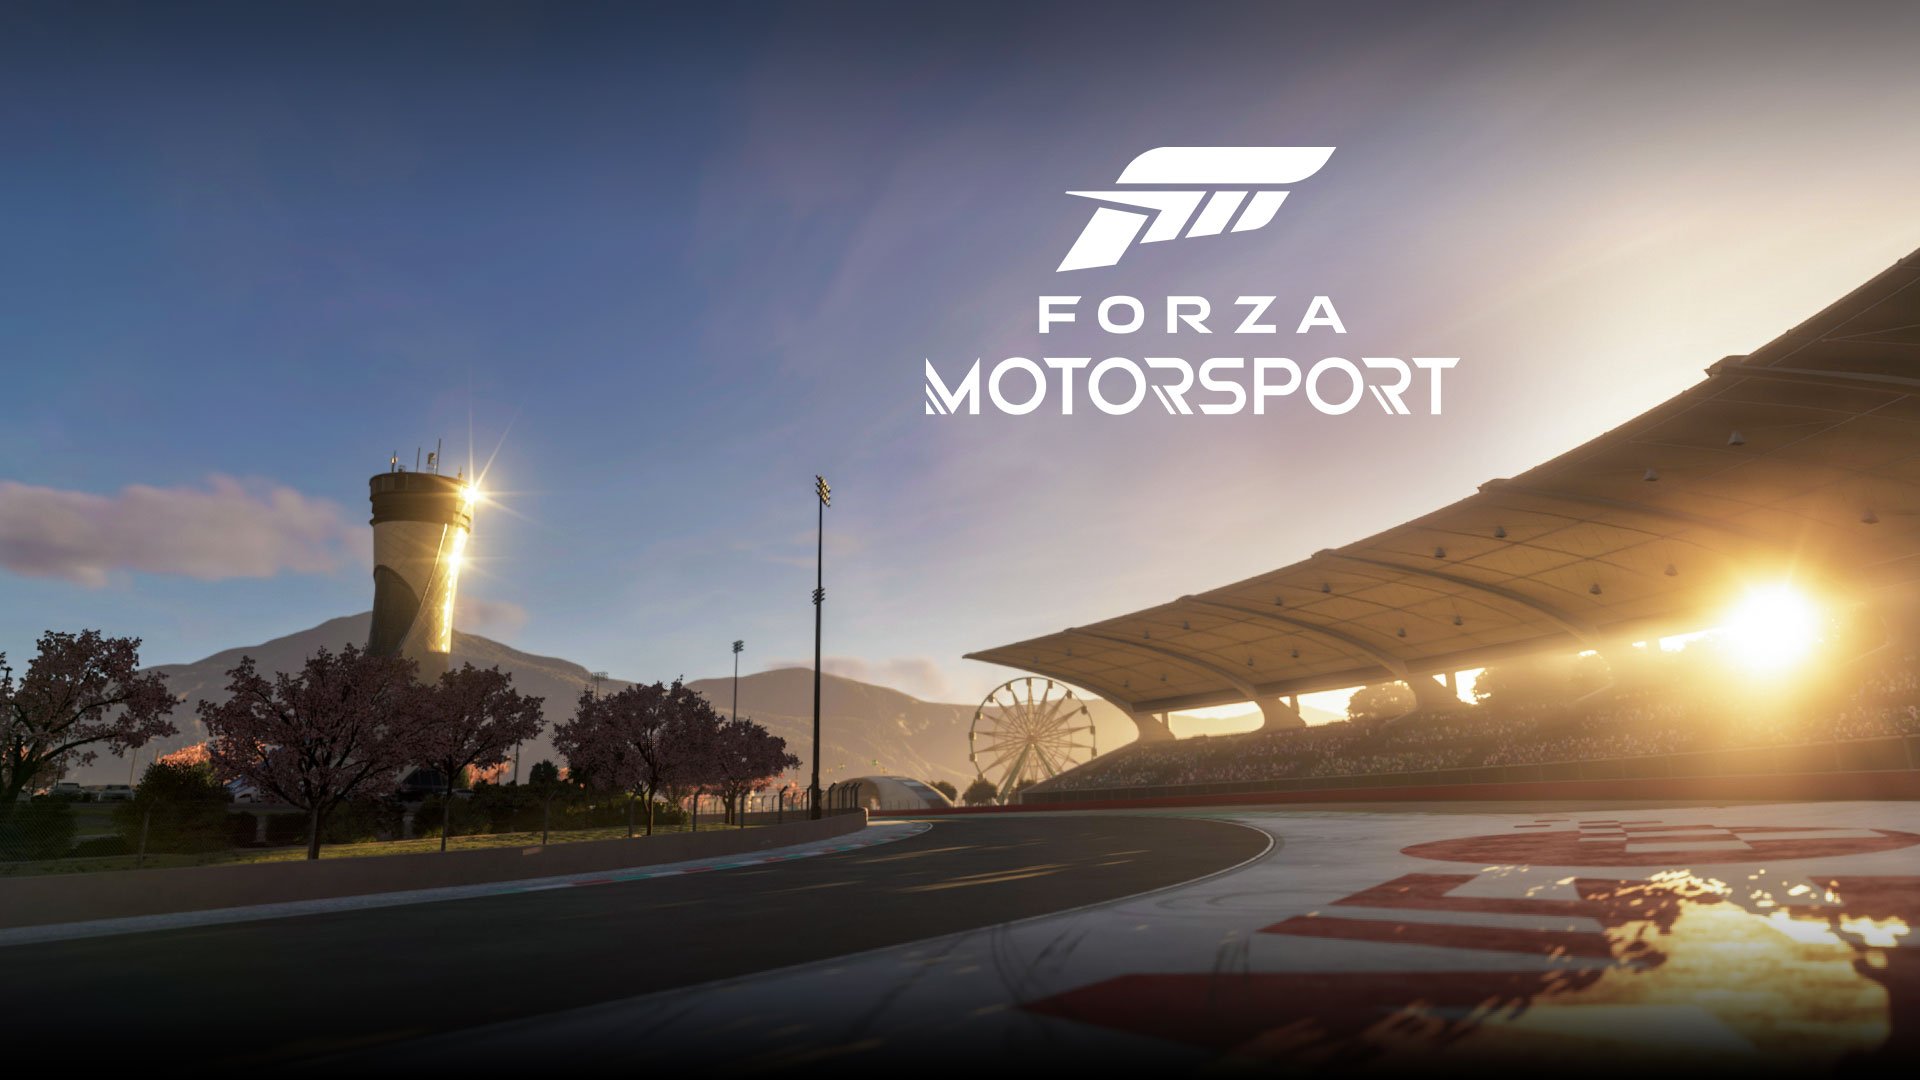 EXCLUSIVO: Forza Motorsport será lançado em 10 de outubro